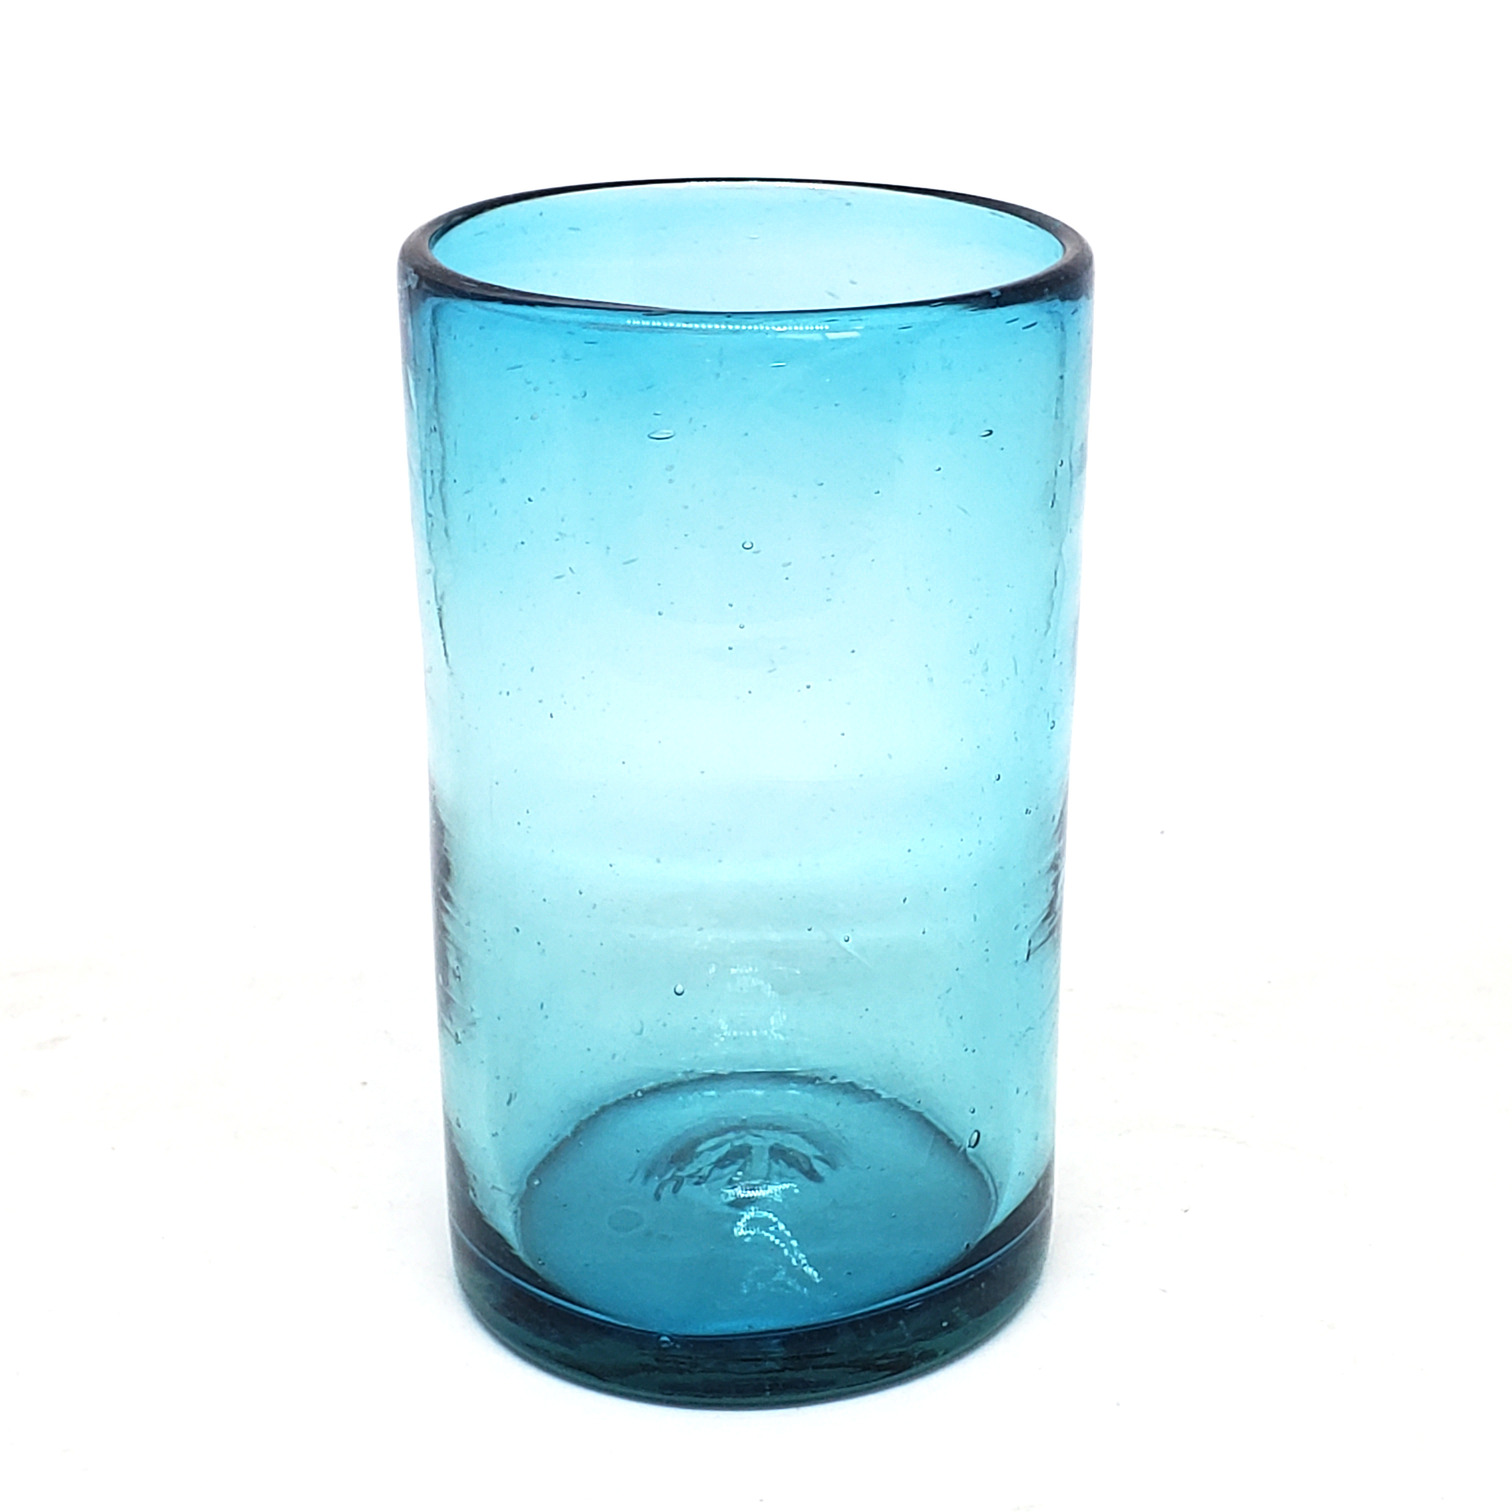 Colores Solidos al Mayoreo / vasos grandes color azul aqua / Éstos artesanales vasos le darán un toque clásico a su bebida favorita.